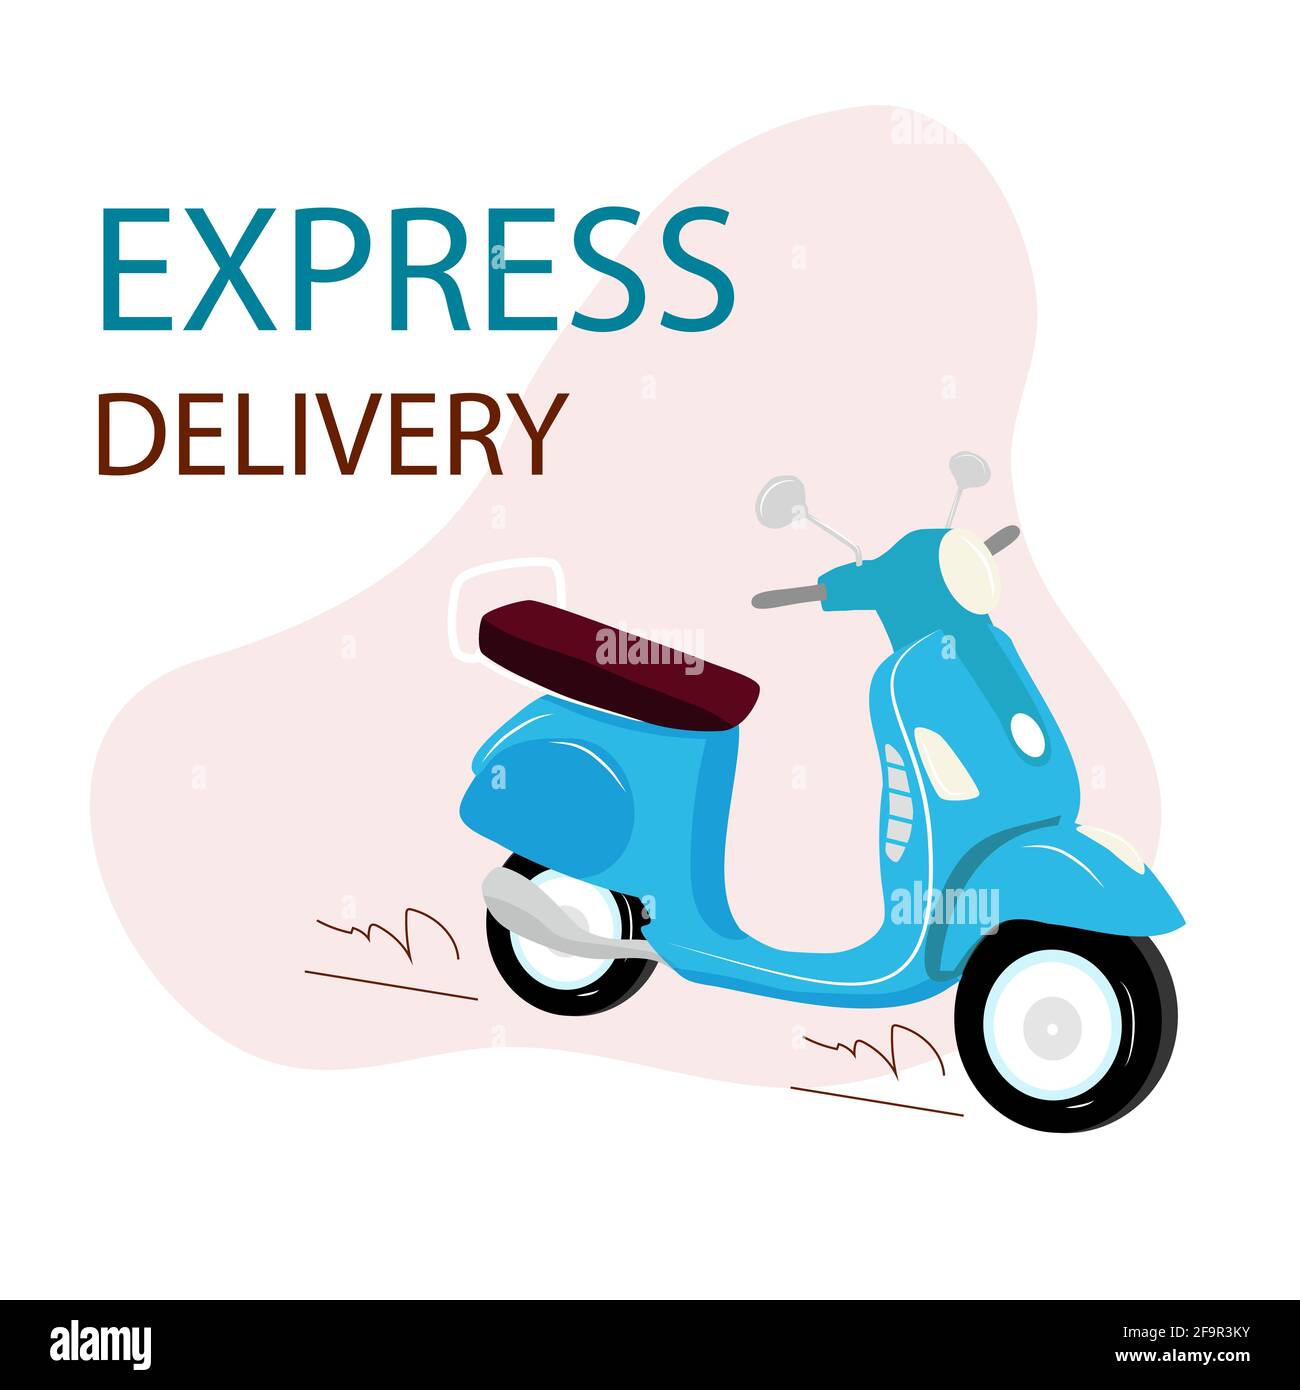 Moto bleue avec livraison par SMS Express. Service de livraison. Concept  d'expédition rapide. Illustration vectorielle plate. Scooter bleu sur fond  blanc. Pizza Image Vectorielle Stock - Alamy